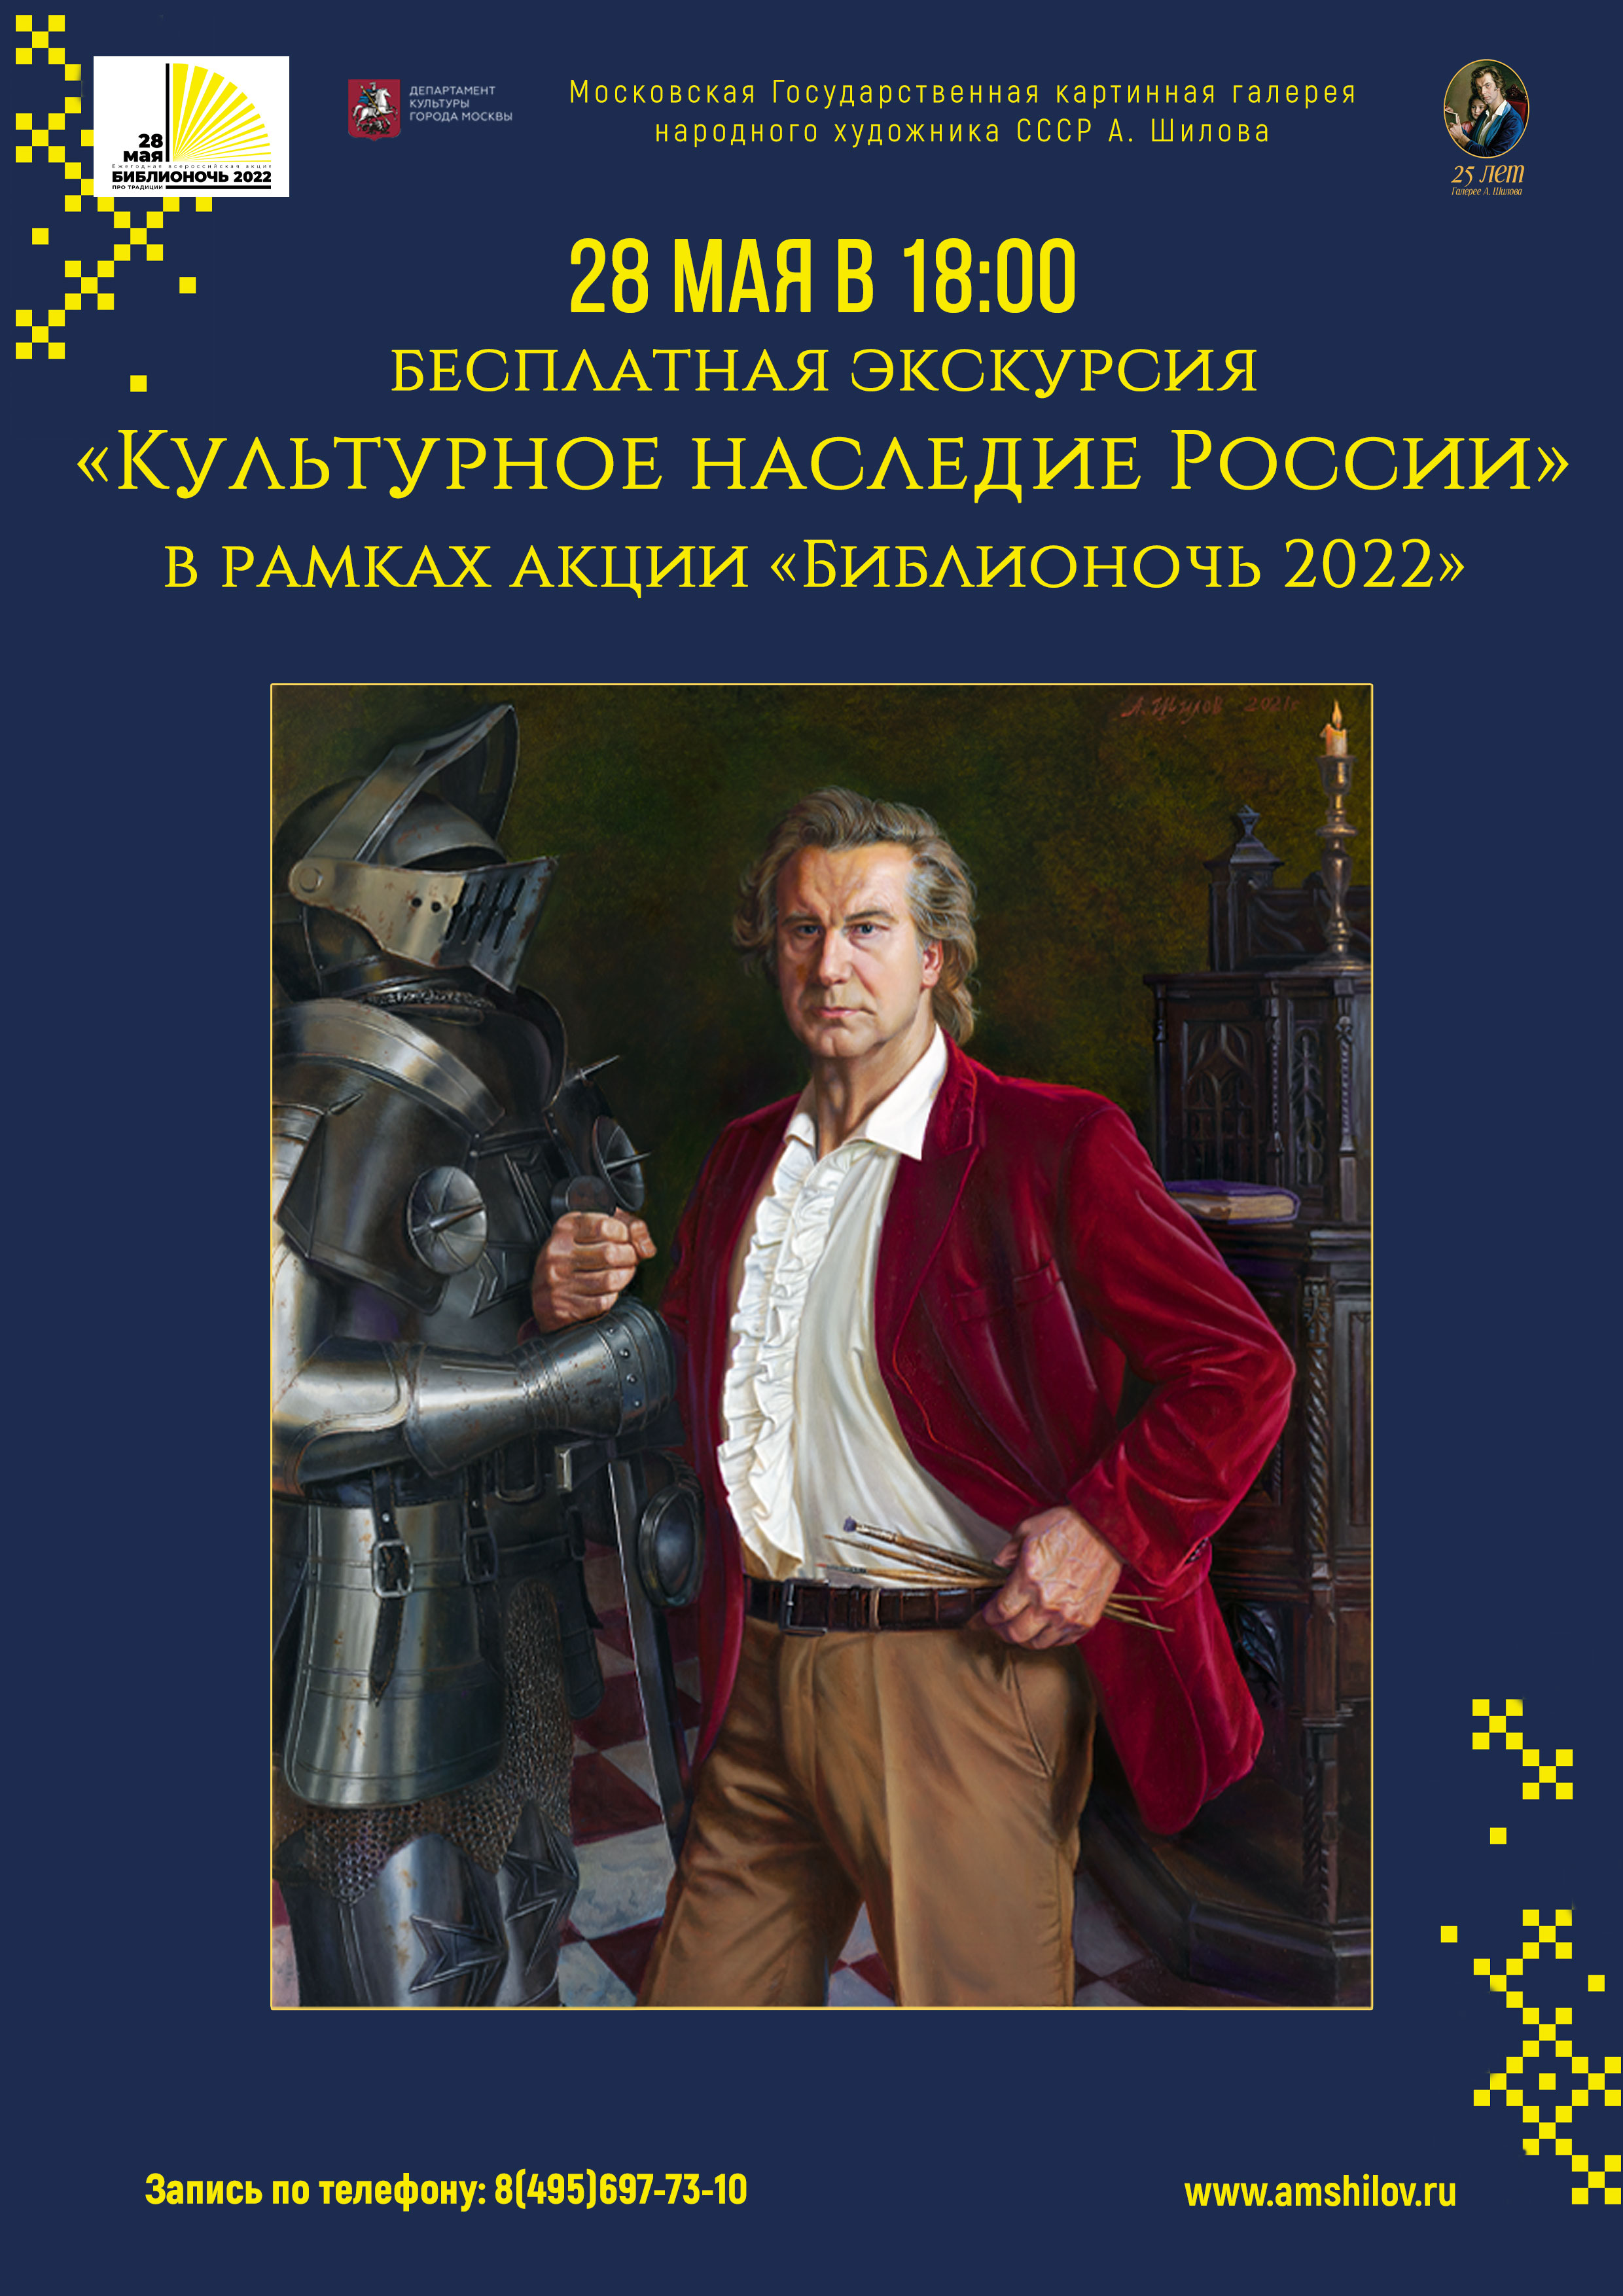 Бесплатная экскурсия «Культурное наследие России» в рамках акции «Библионочь 2022» 